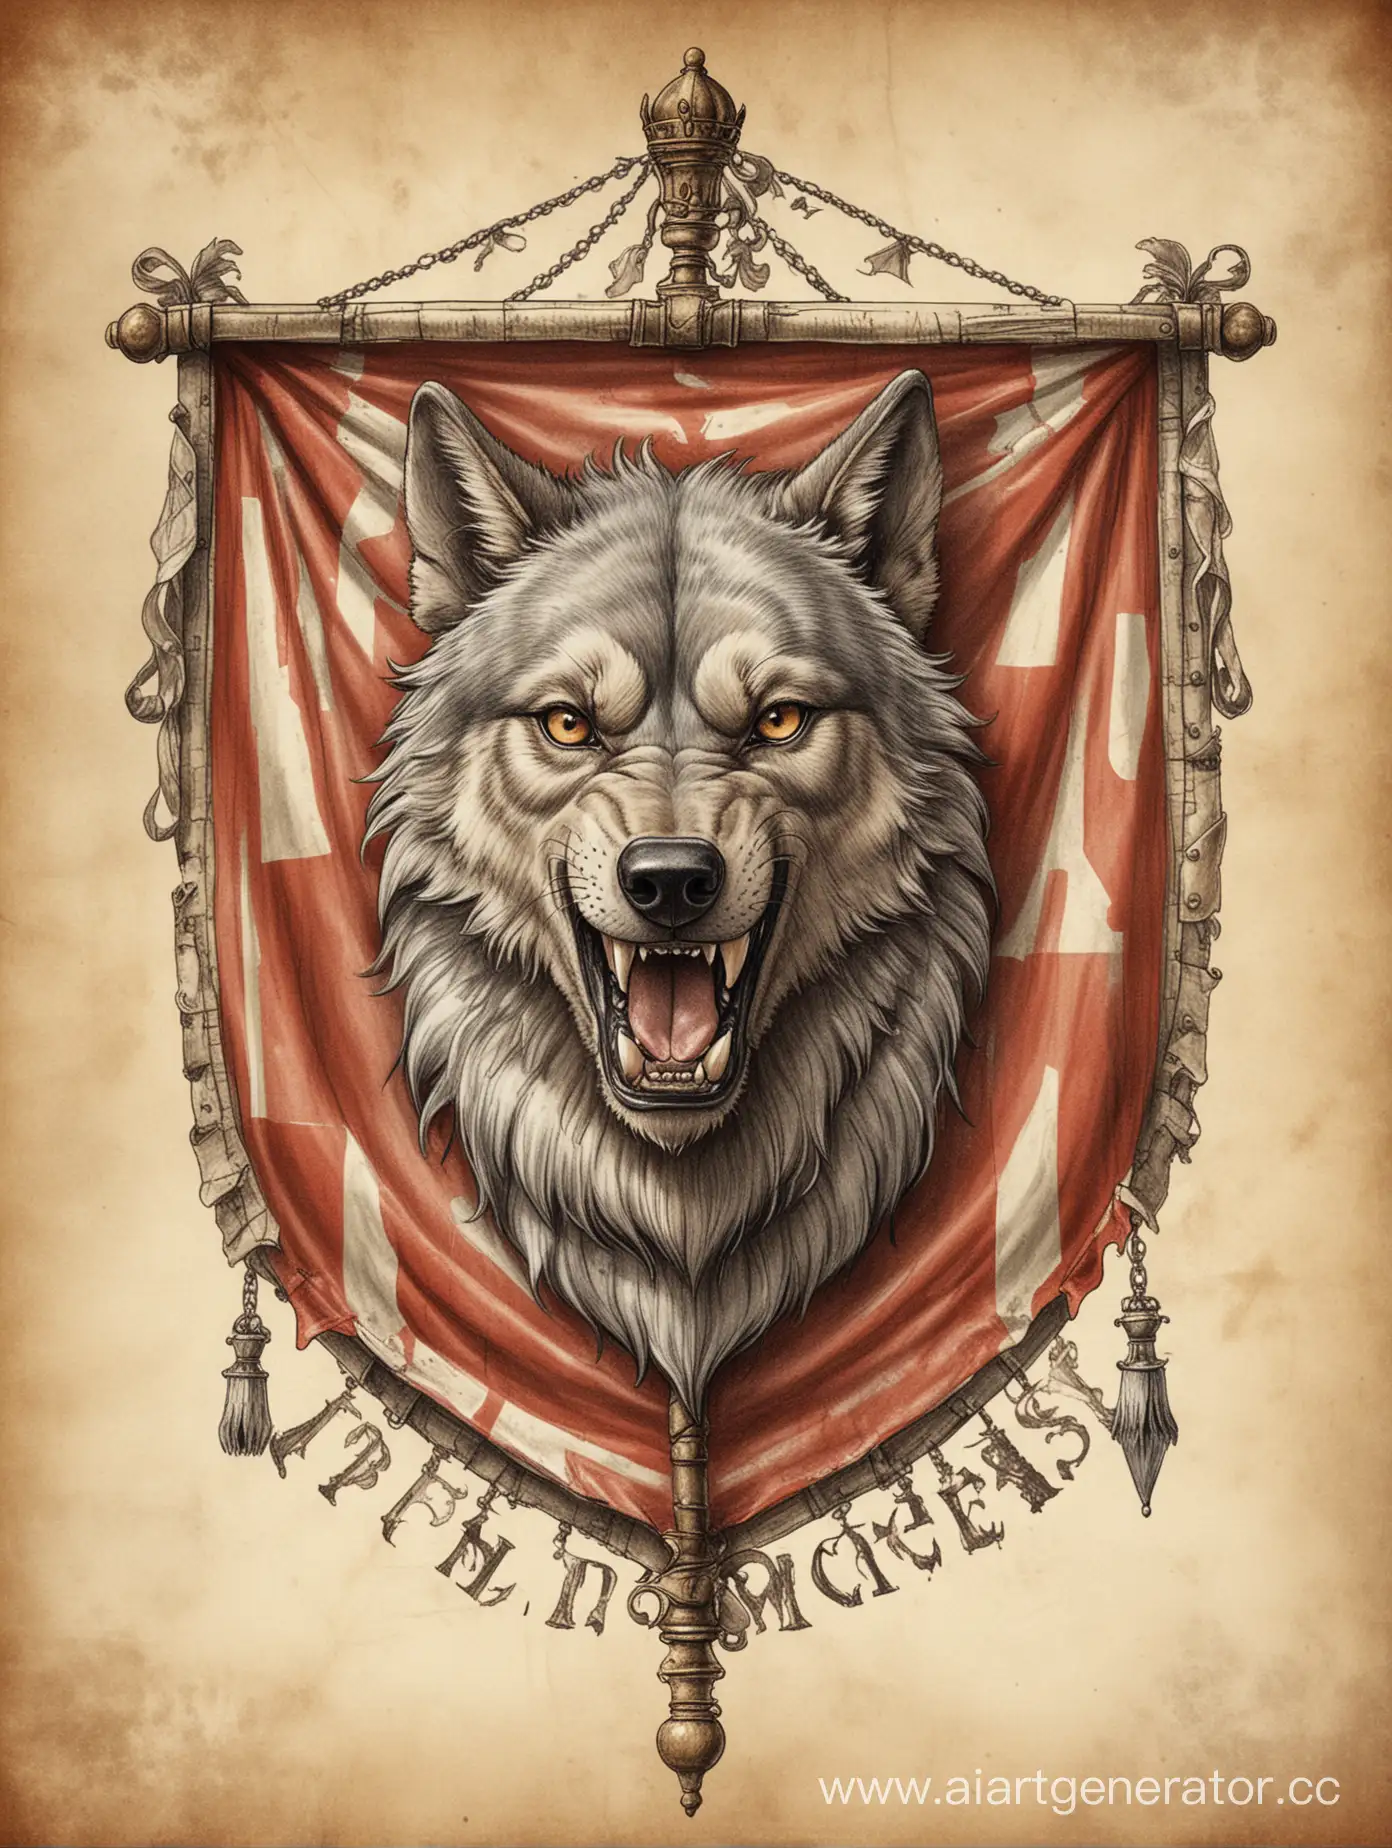 нарисуй герб в стилистике средневековой геральдики, на котором будет нарисован волк, держащий в зубах лестницу, а внизу цирковой шатёр